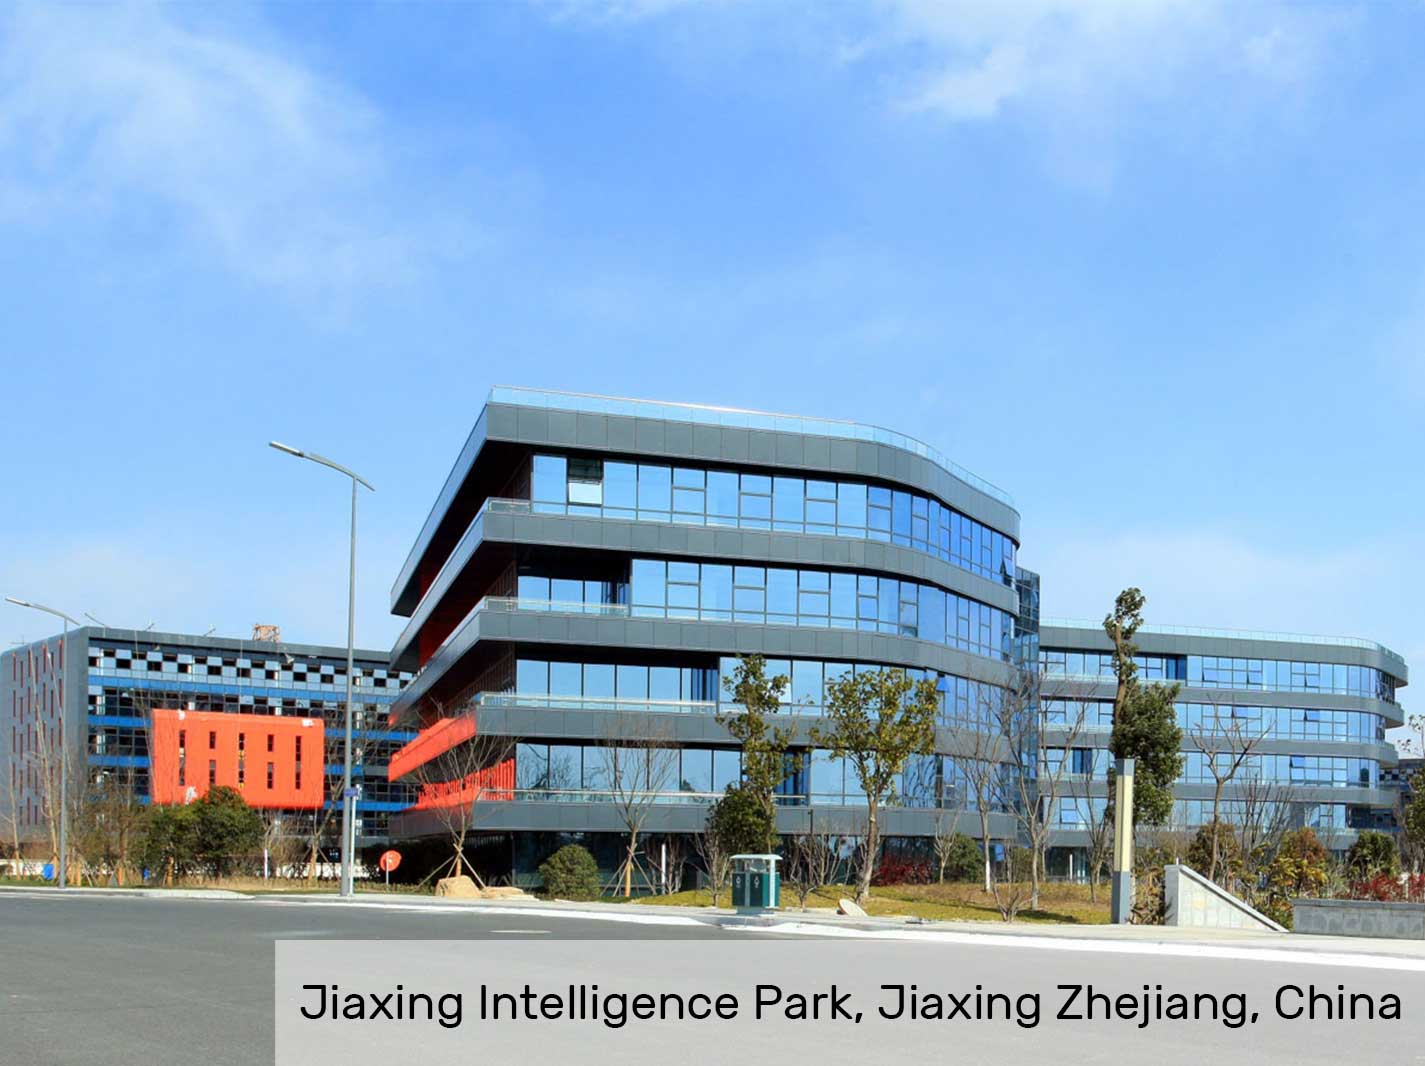 Parque de Inteligencia Jiaxing, Jiaxing Zhejiang, China